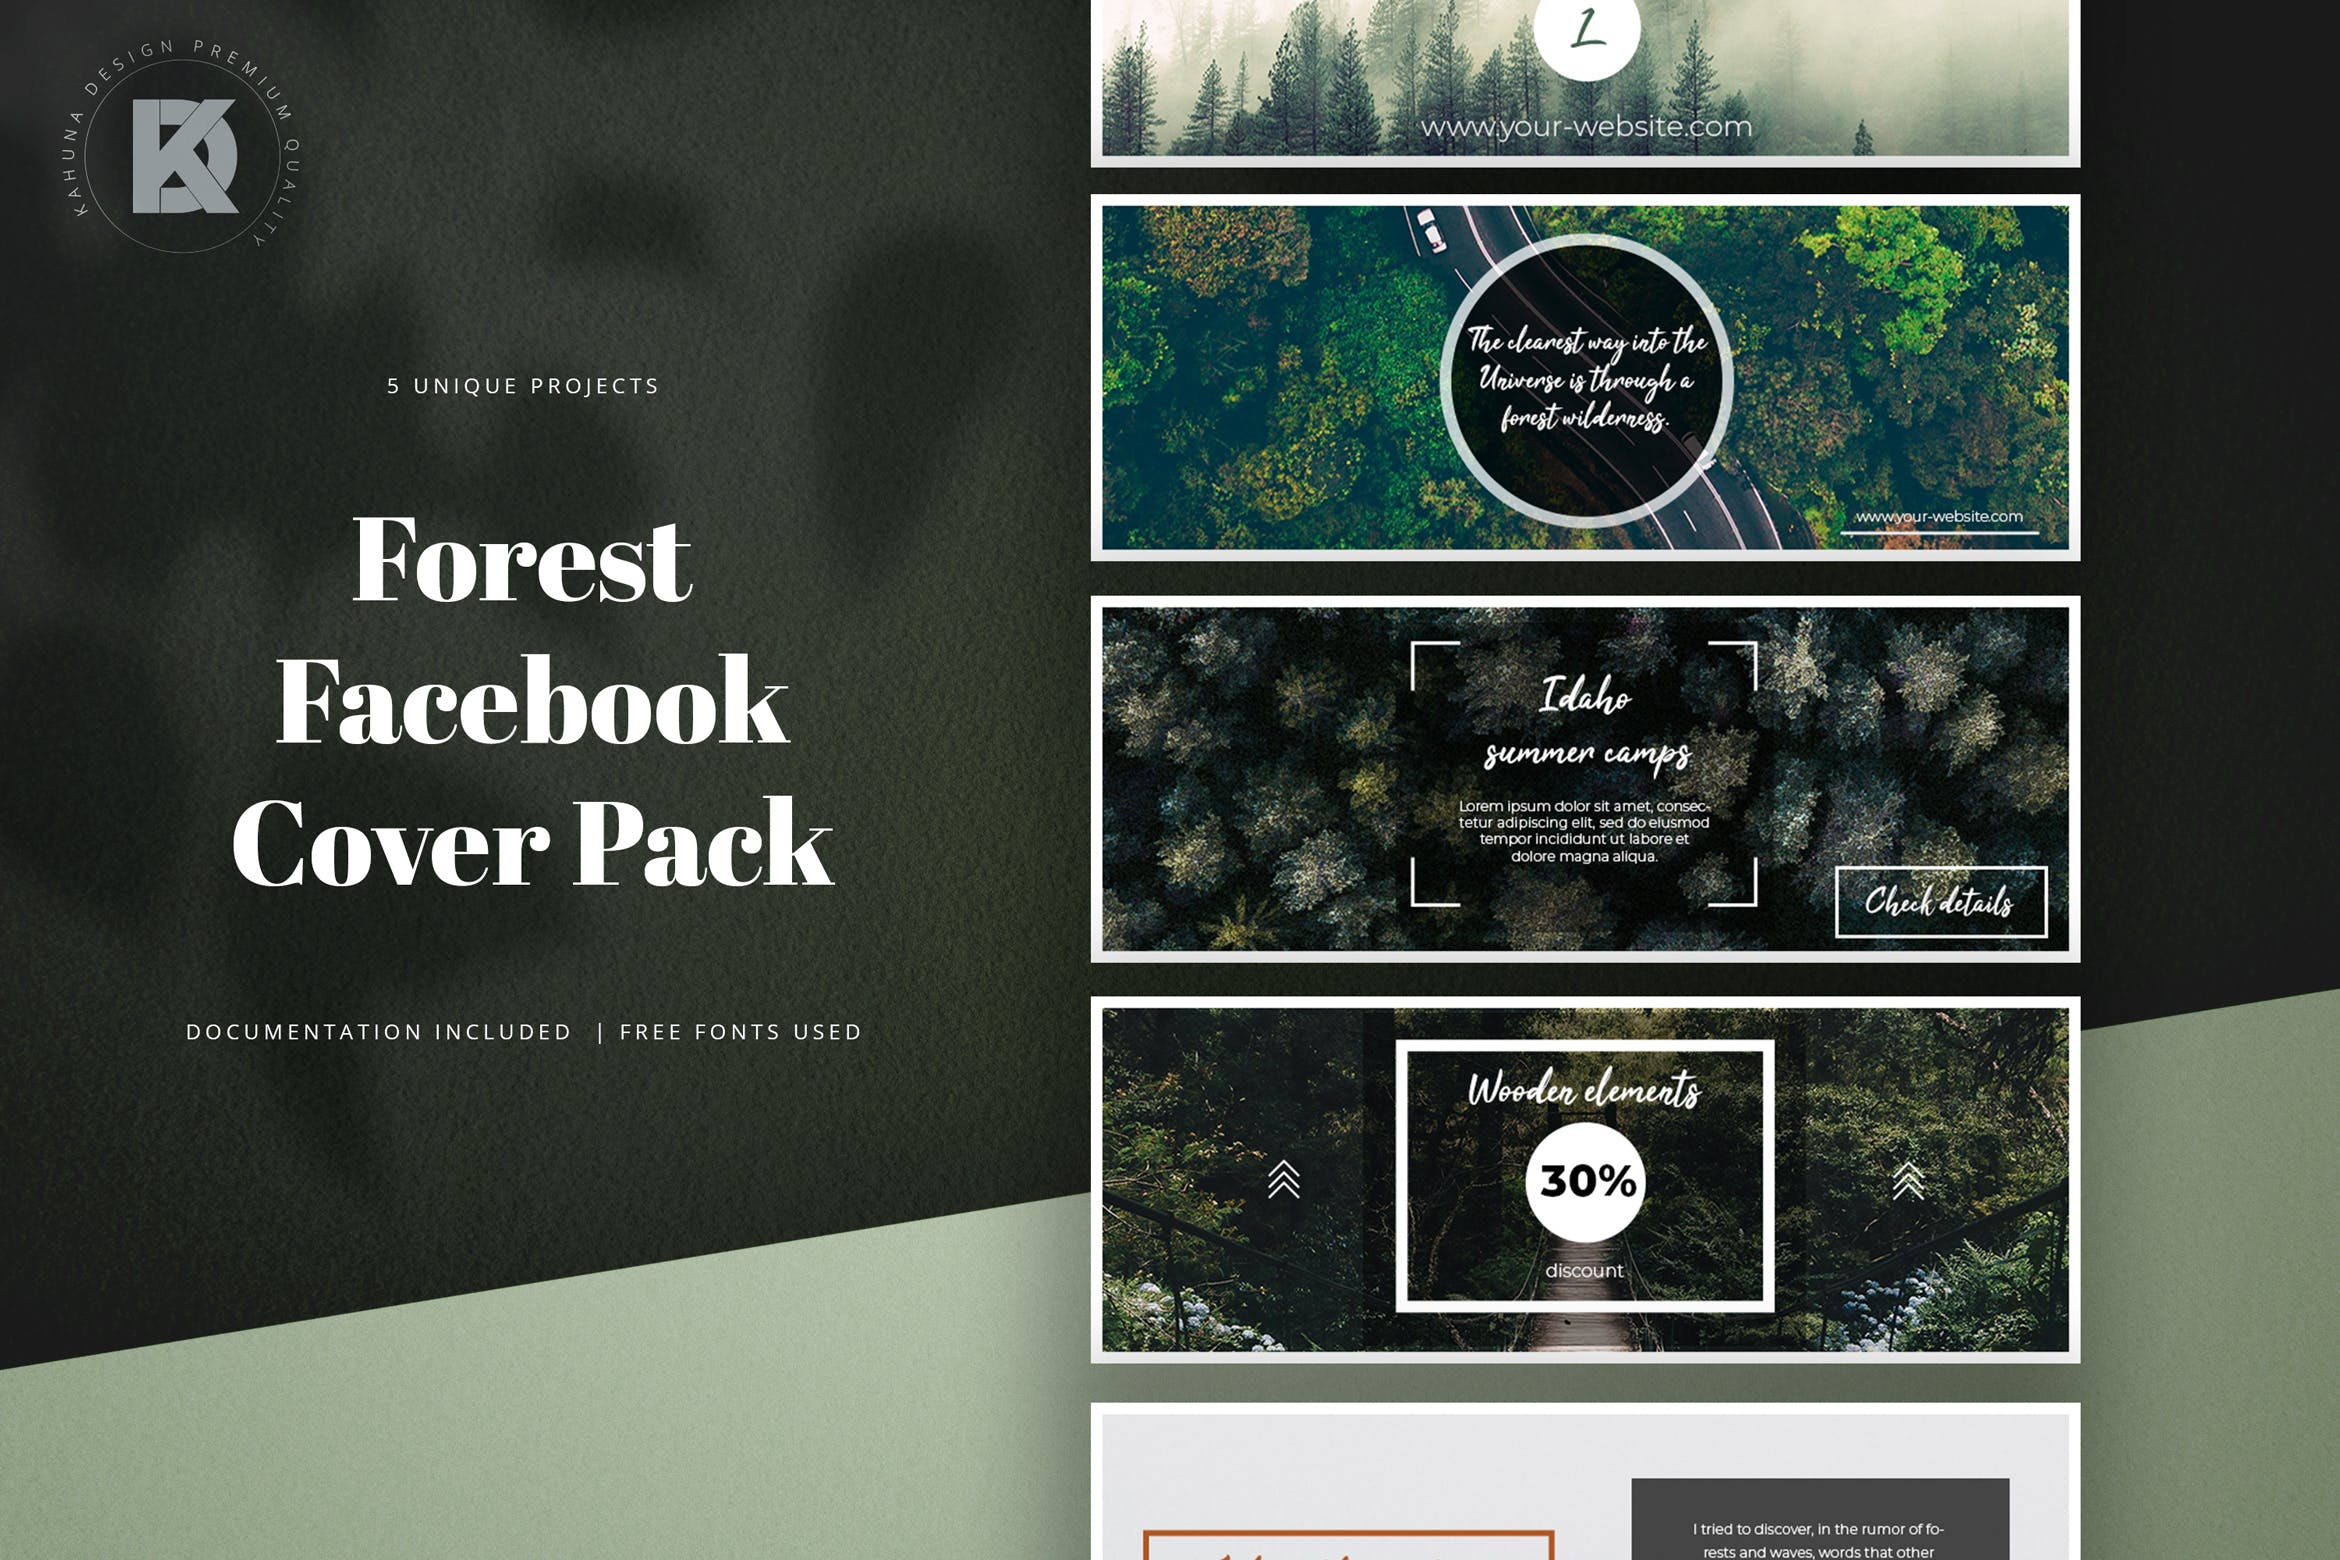 社交网站企业/品牌专业封面设计模板第一素材精选 Forest Facebook Cover Kit插图